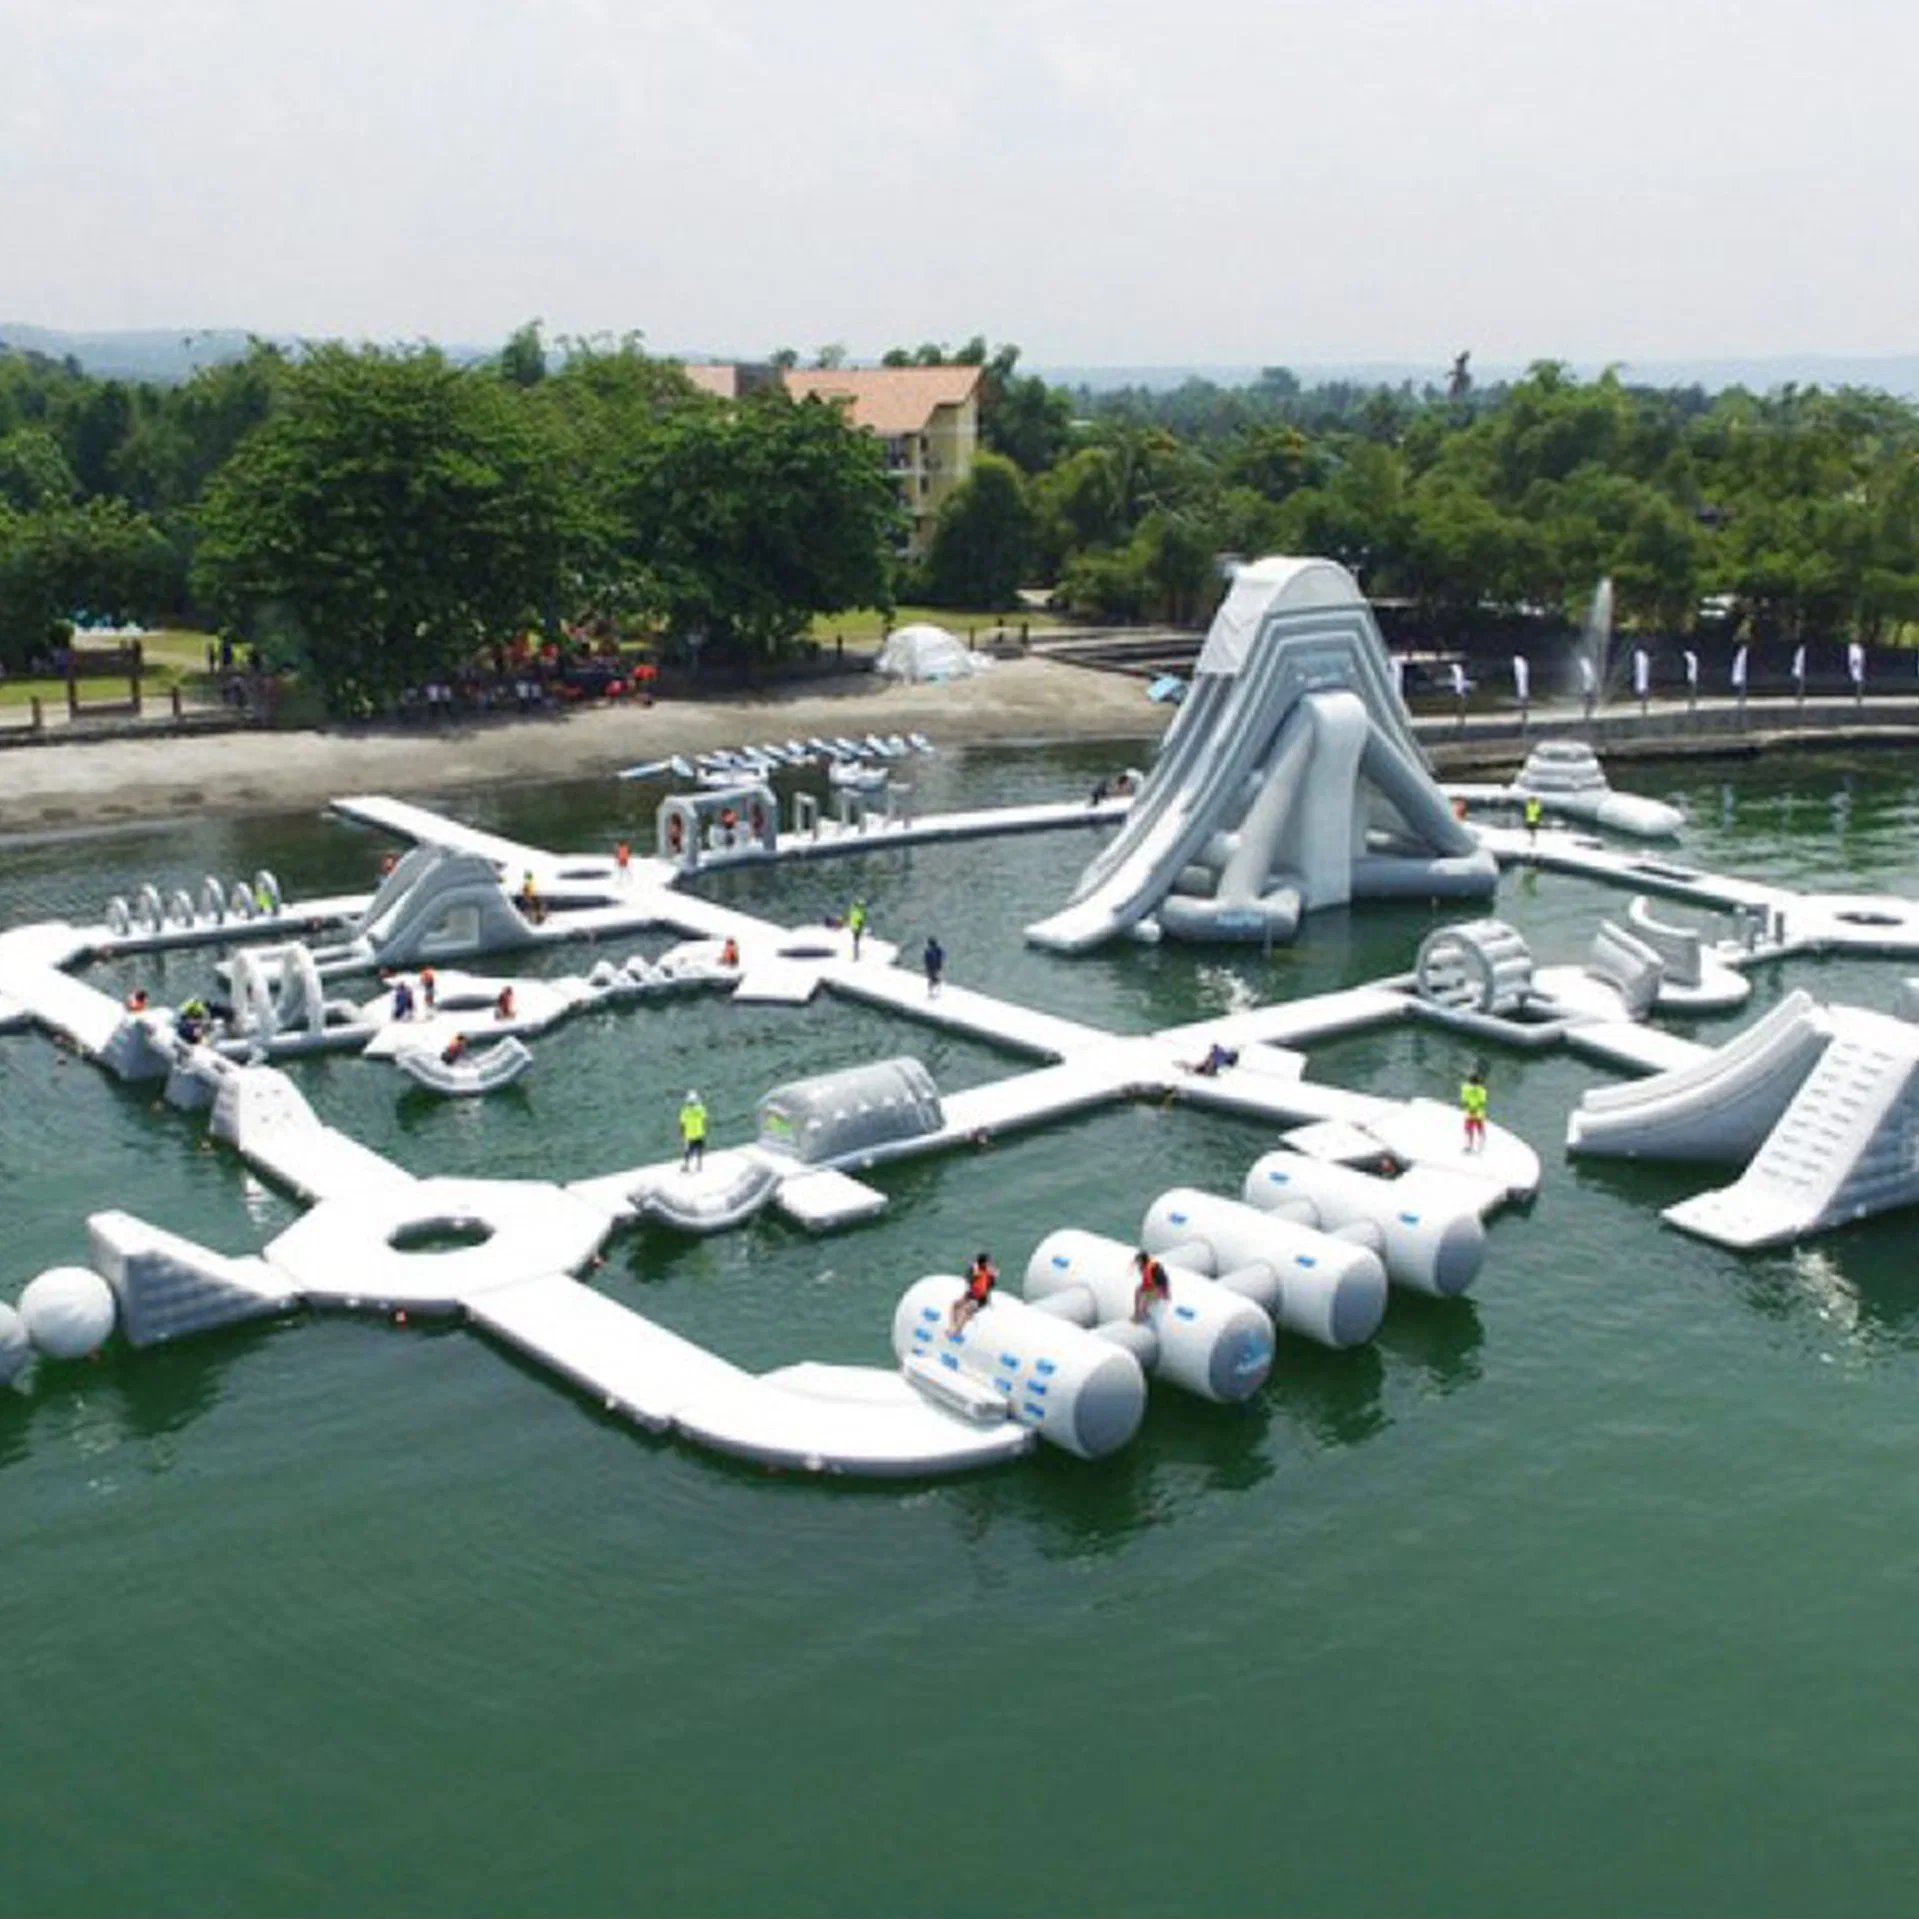 Parque acuático inflable para niños obstáculo flotante del parque acuático inflable Parque de atracciones Course para adultos